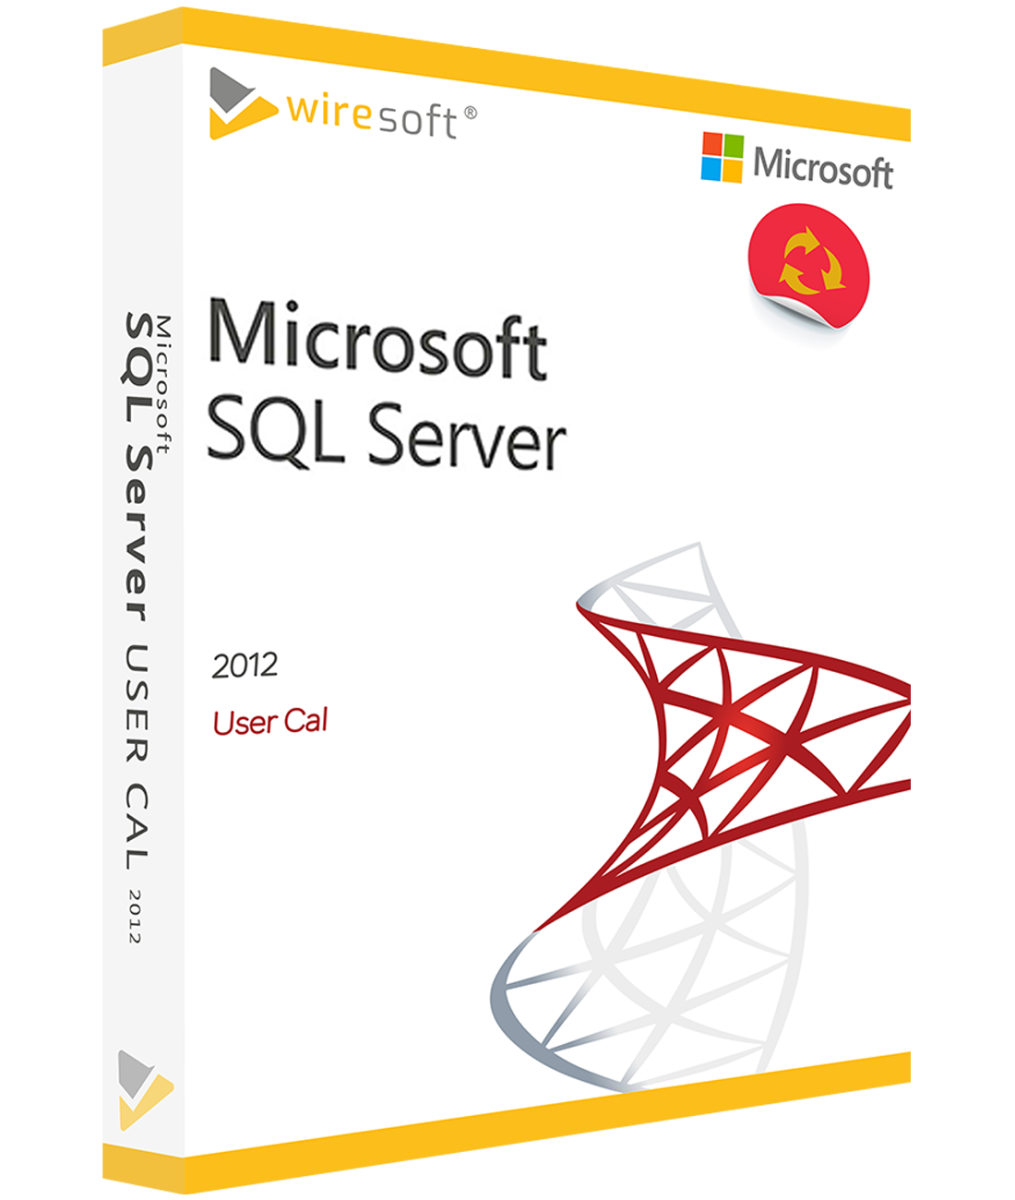 Windows Server 2012 Microsoft Windows Server Server Software Shop Wiresoft Lizenzen Online 7670